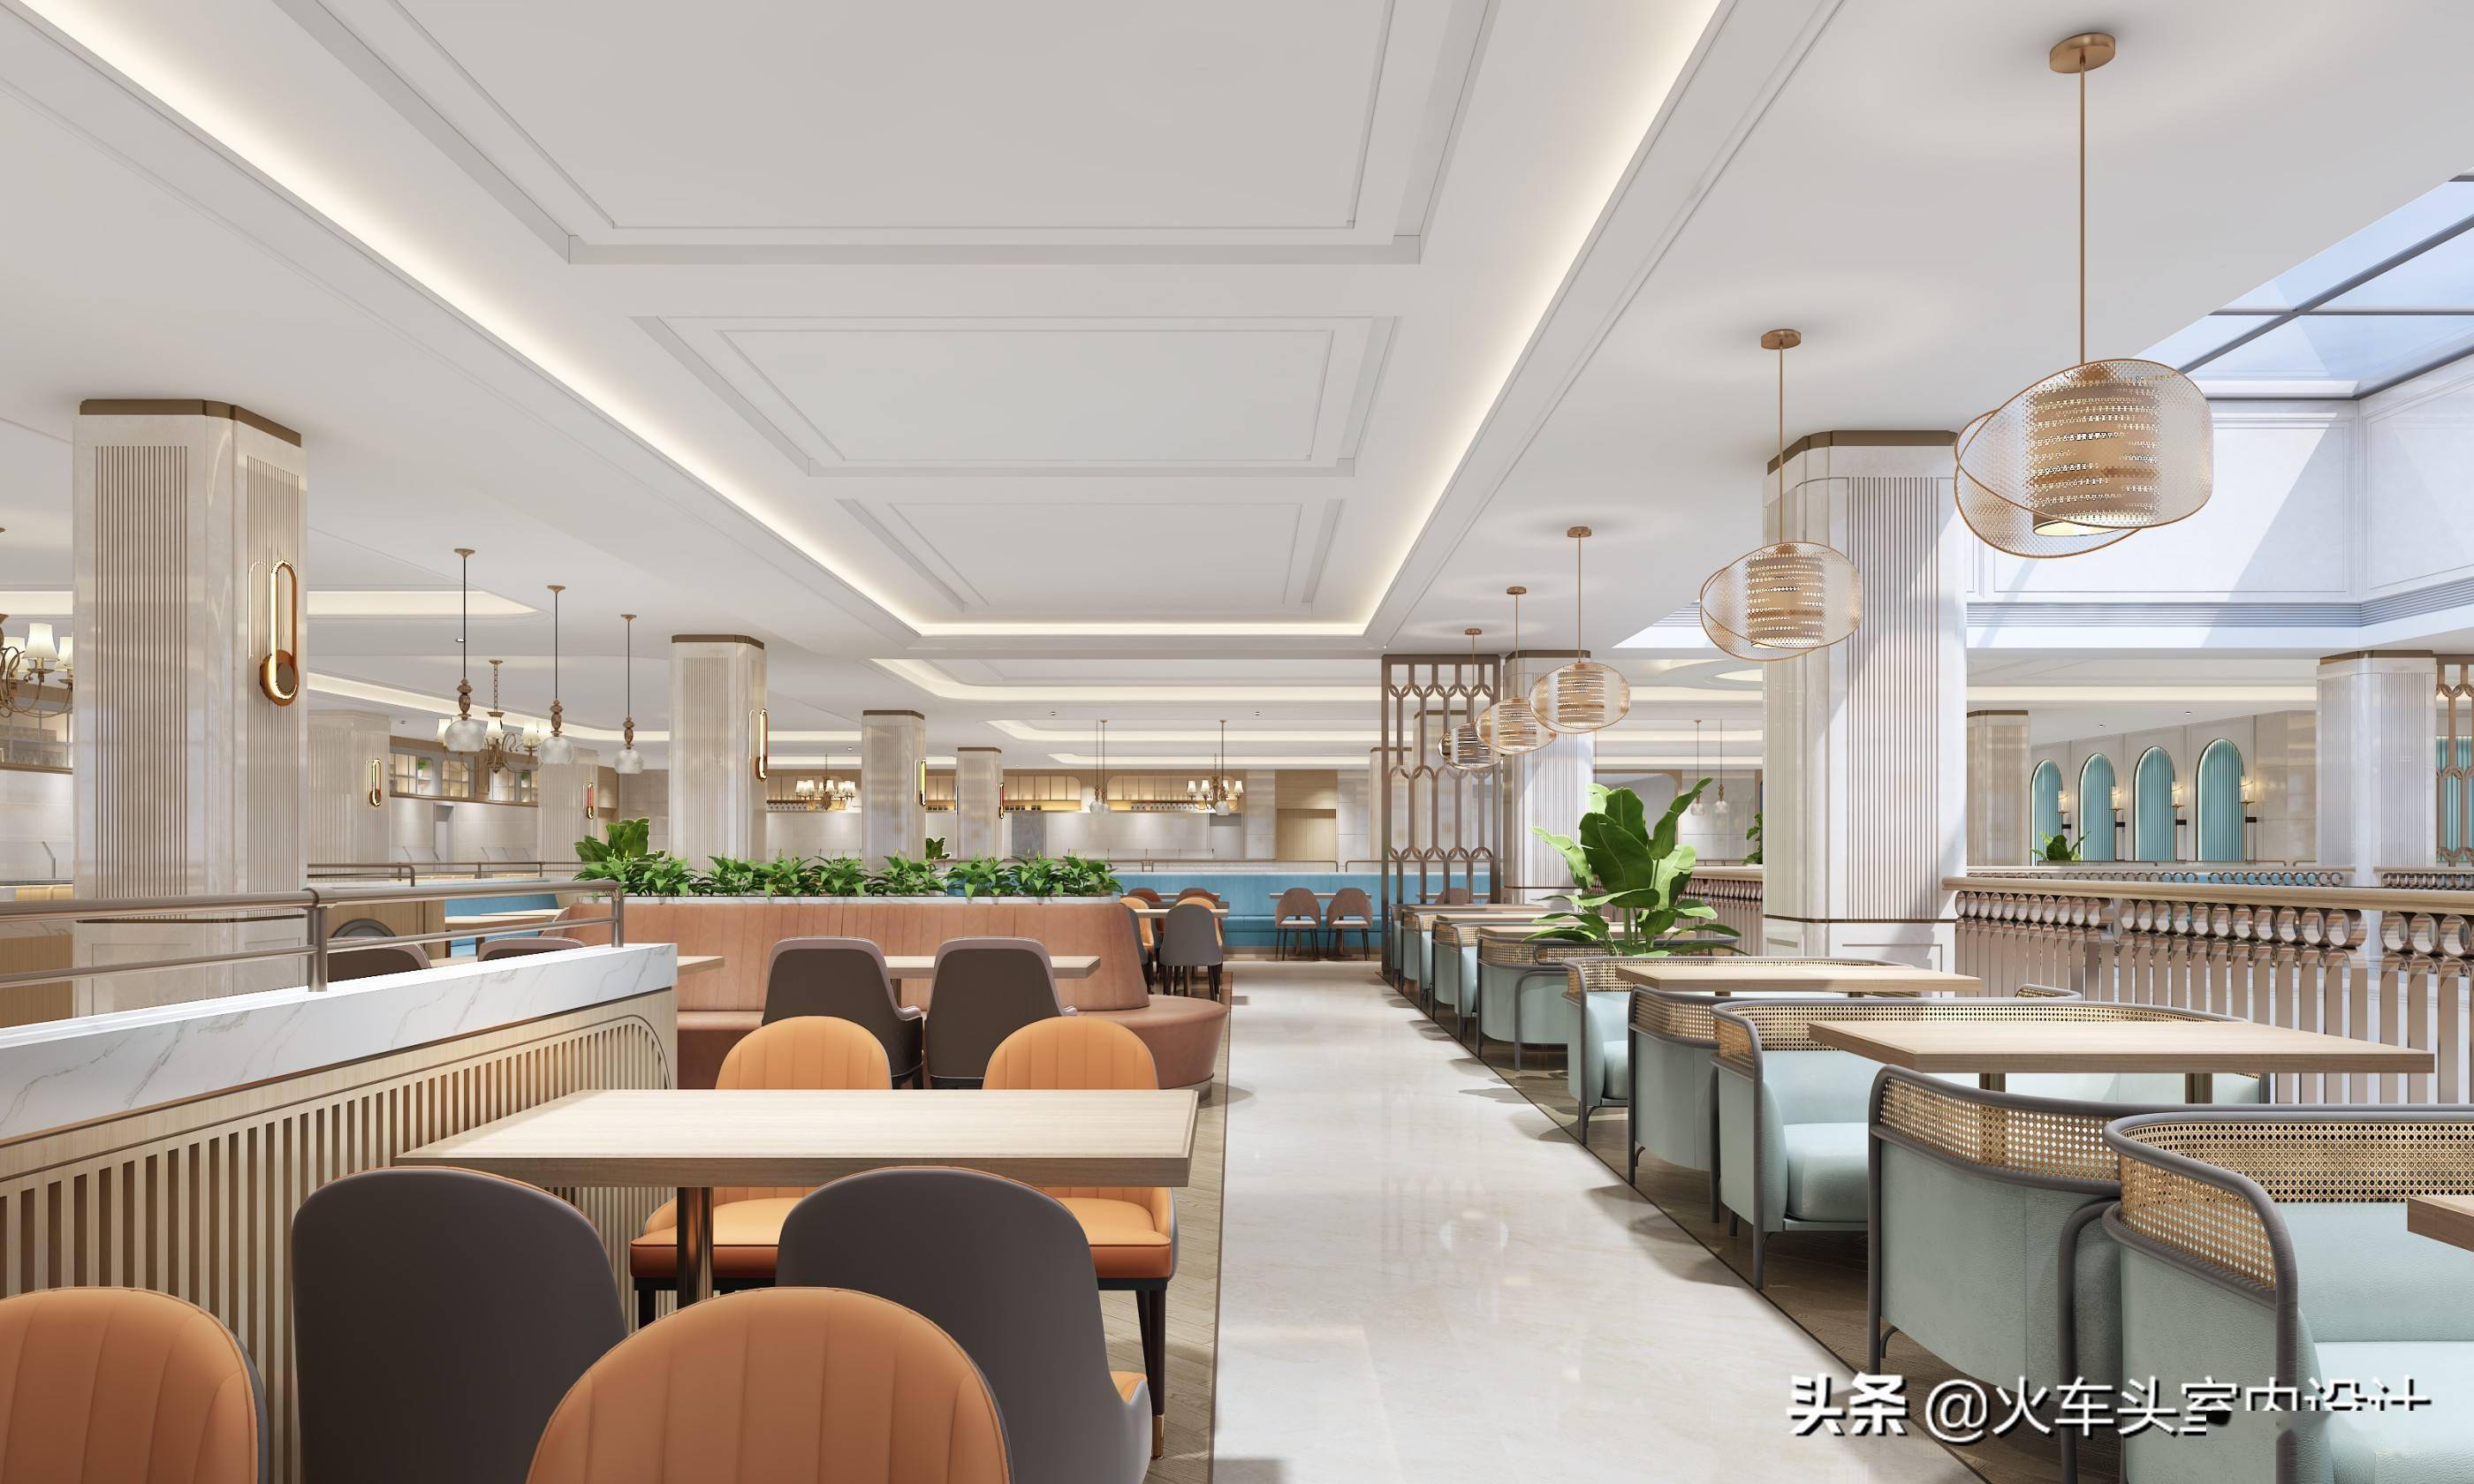 h82企业餐厅员工餐厅食堂室内设计效果图32套美食城档口大厅设计